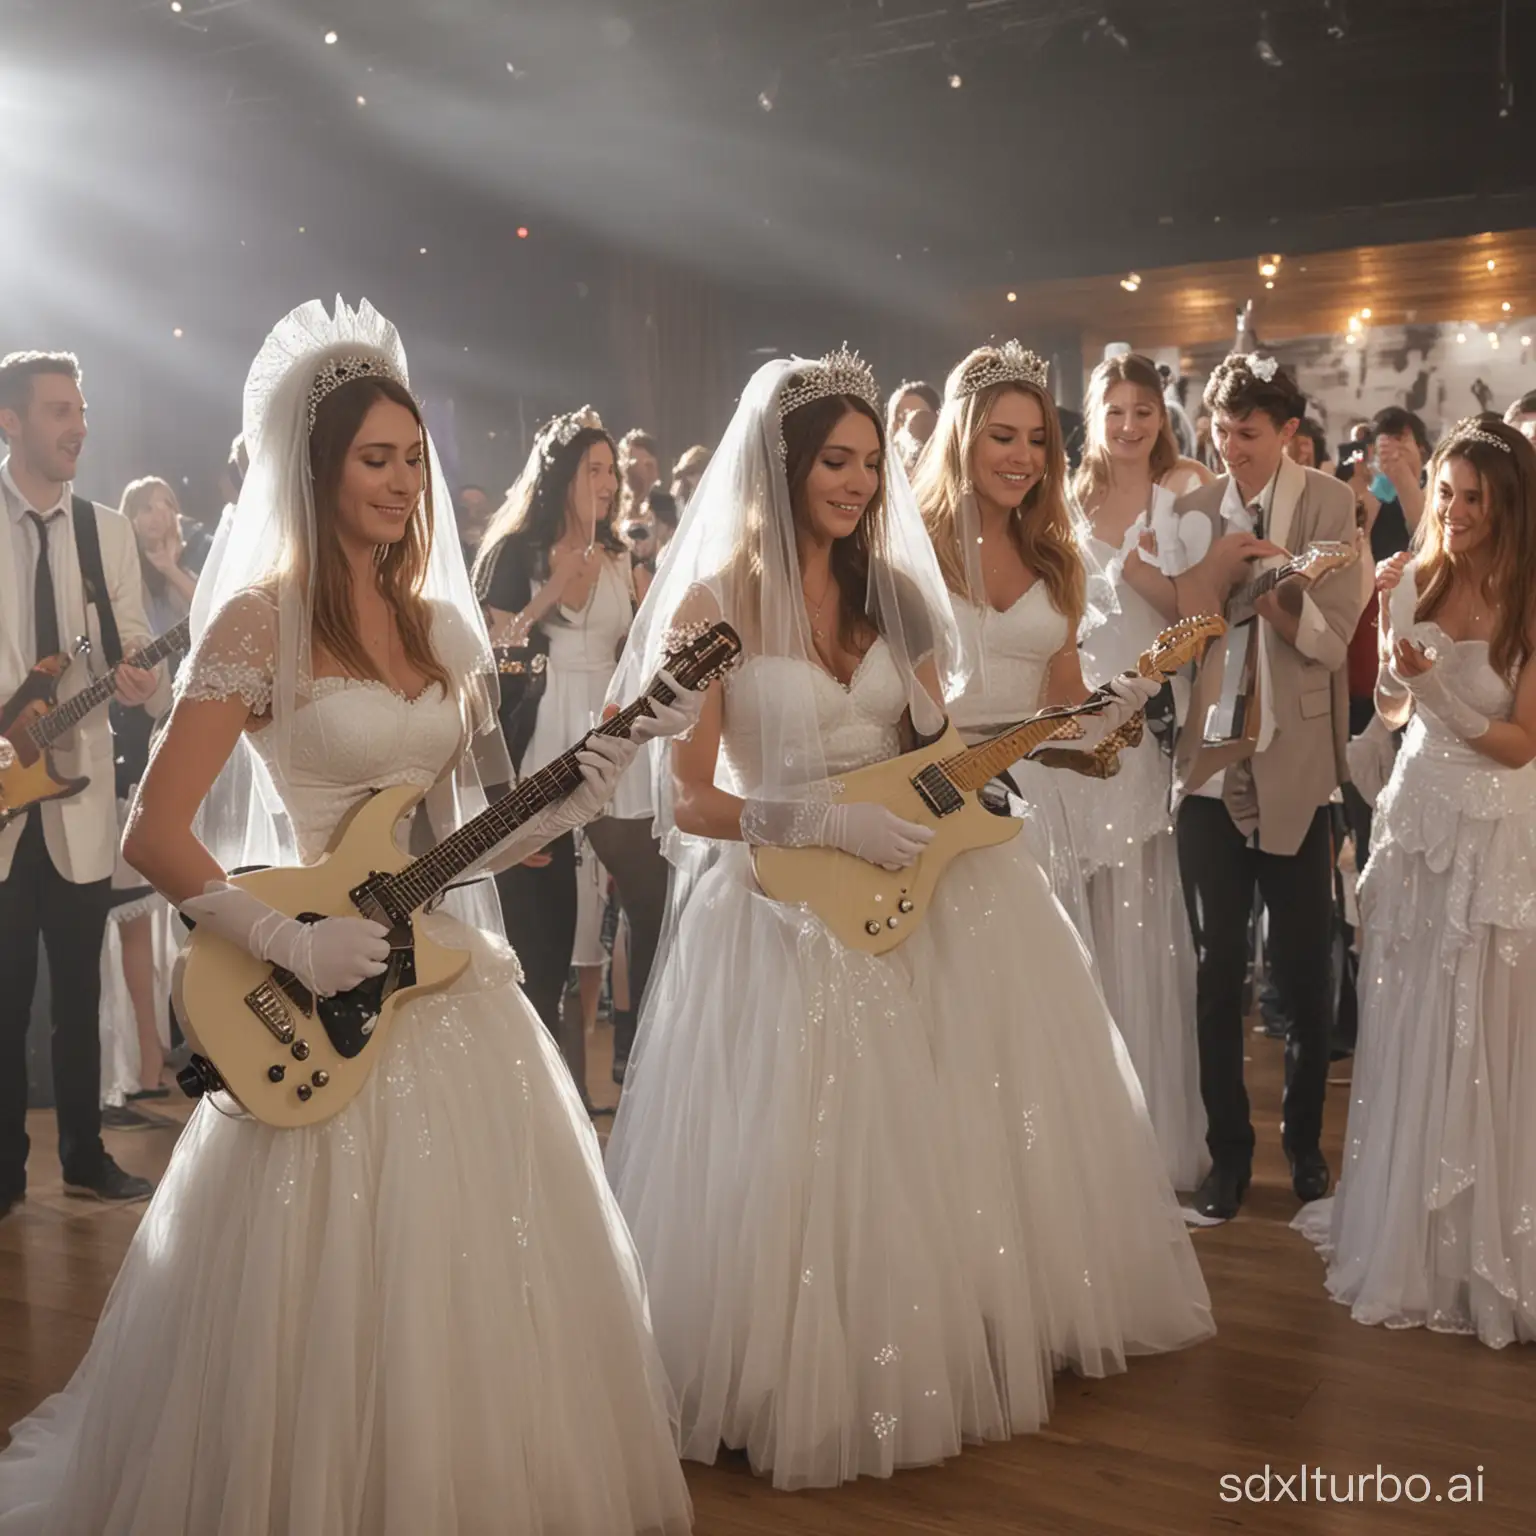 Multidão de noivas de véu e grinalda e luva branca tocando guitarra juntas no palco e pessoas filmando